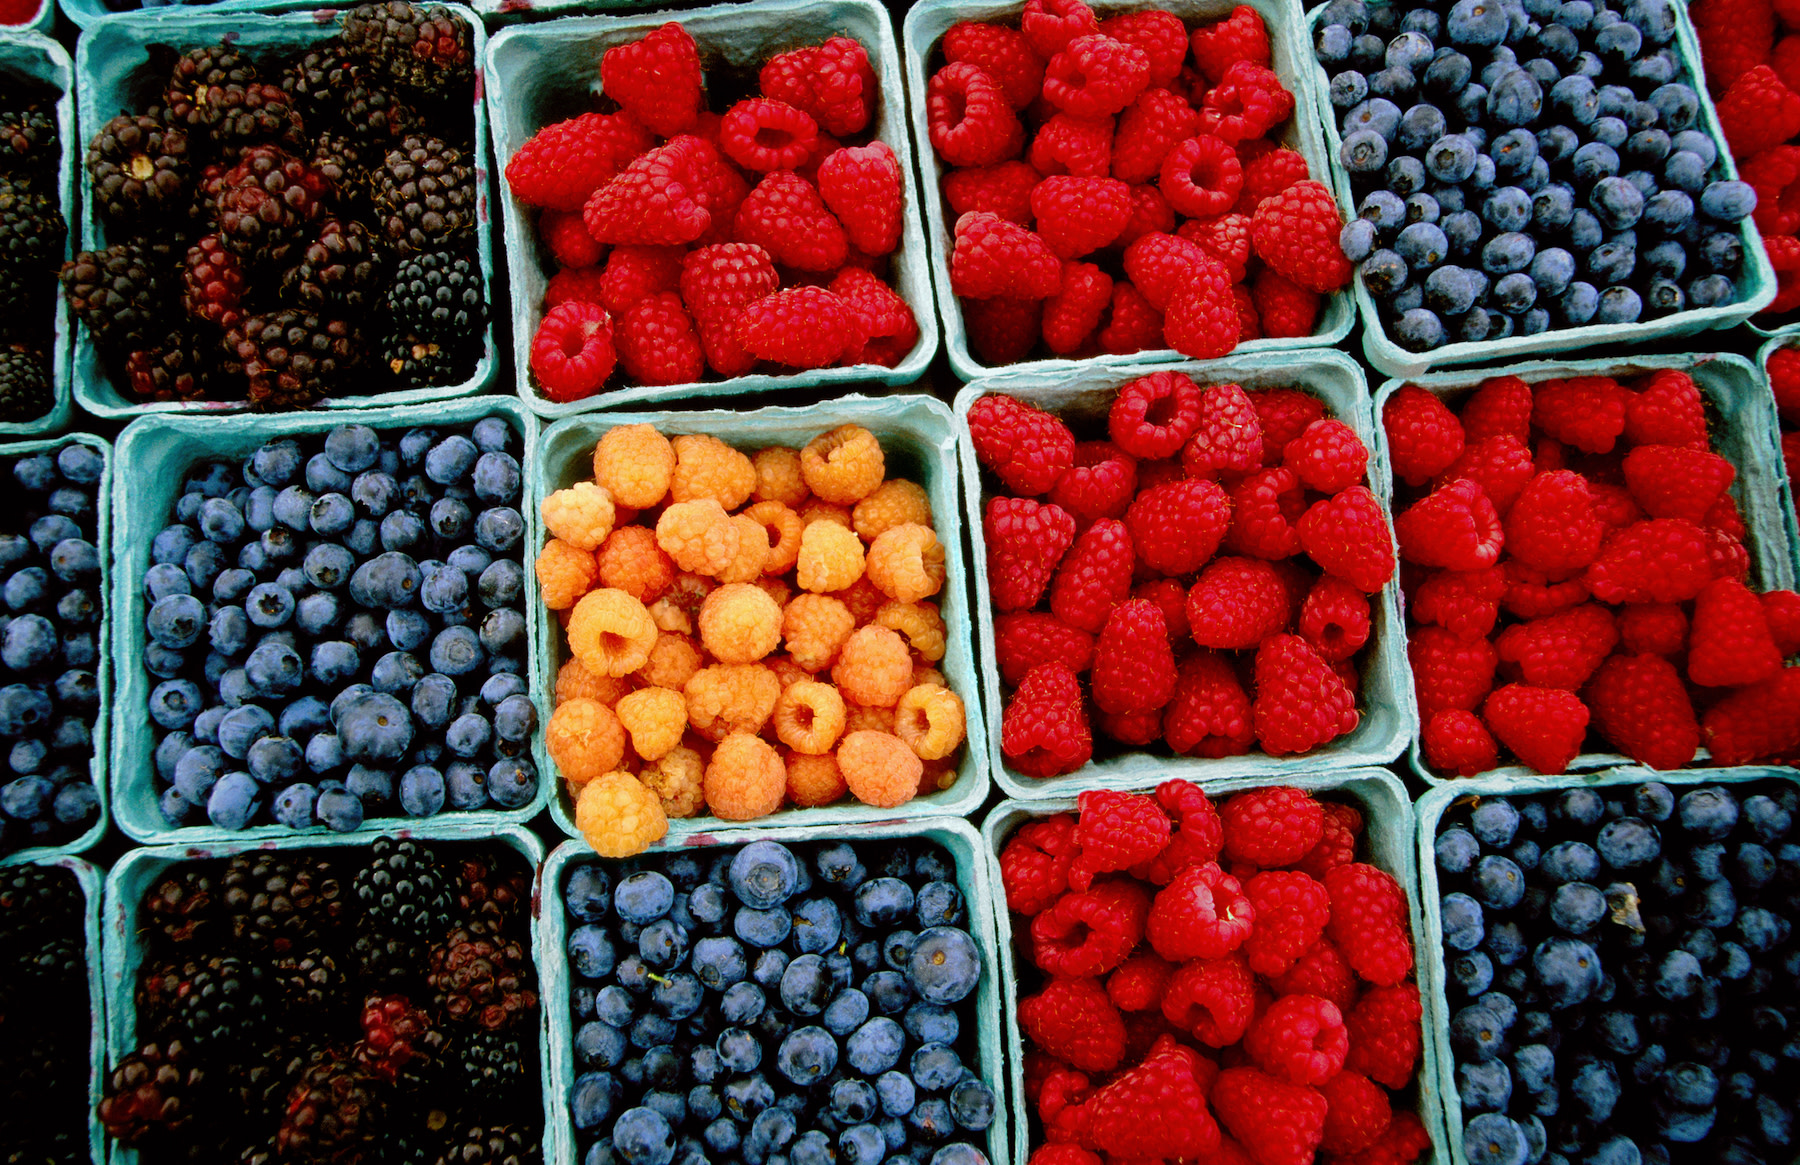 High-Fiber Foods: Multiple cartons of raspberries, blueberries, and blackberries.